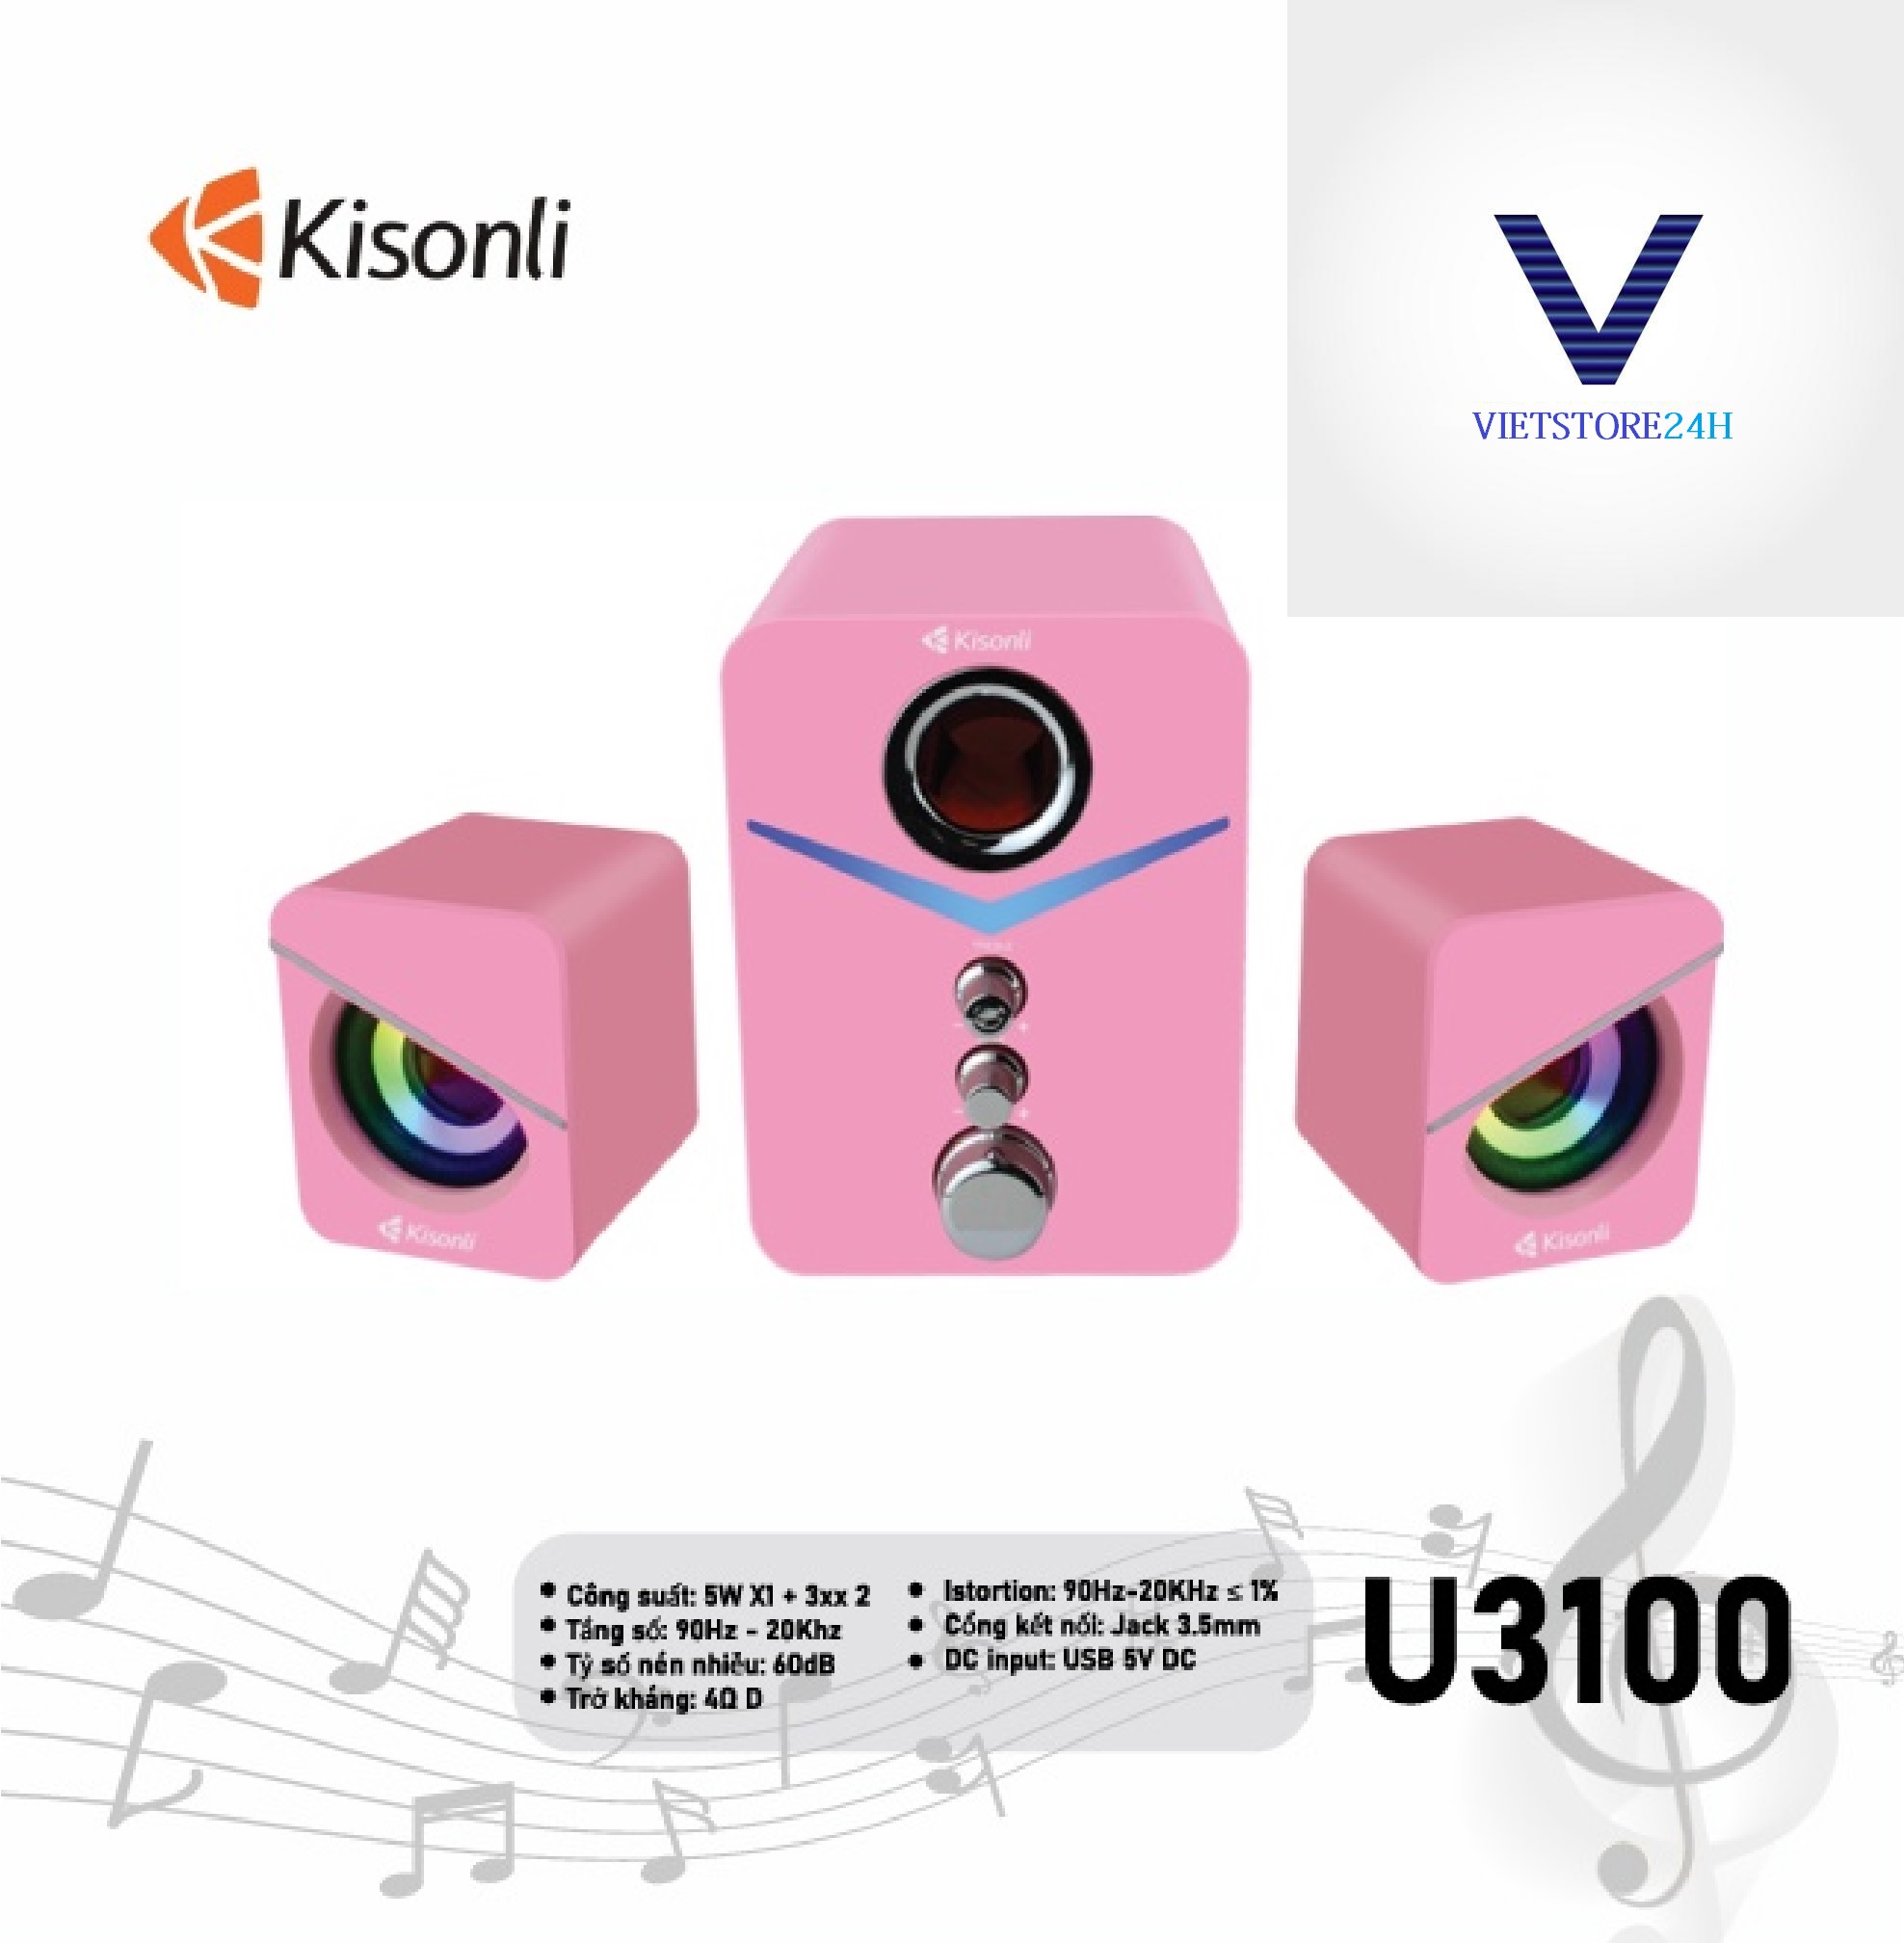 Loa 2.1 Kisonli U-3100 Pink LED - Hàng chính hãng